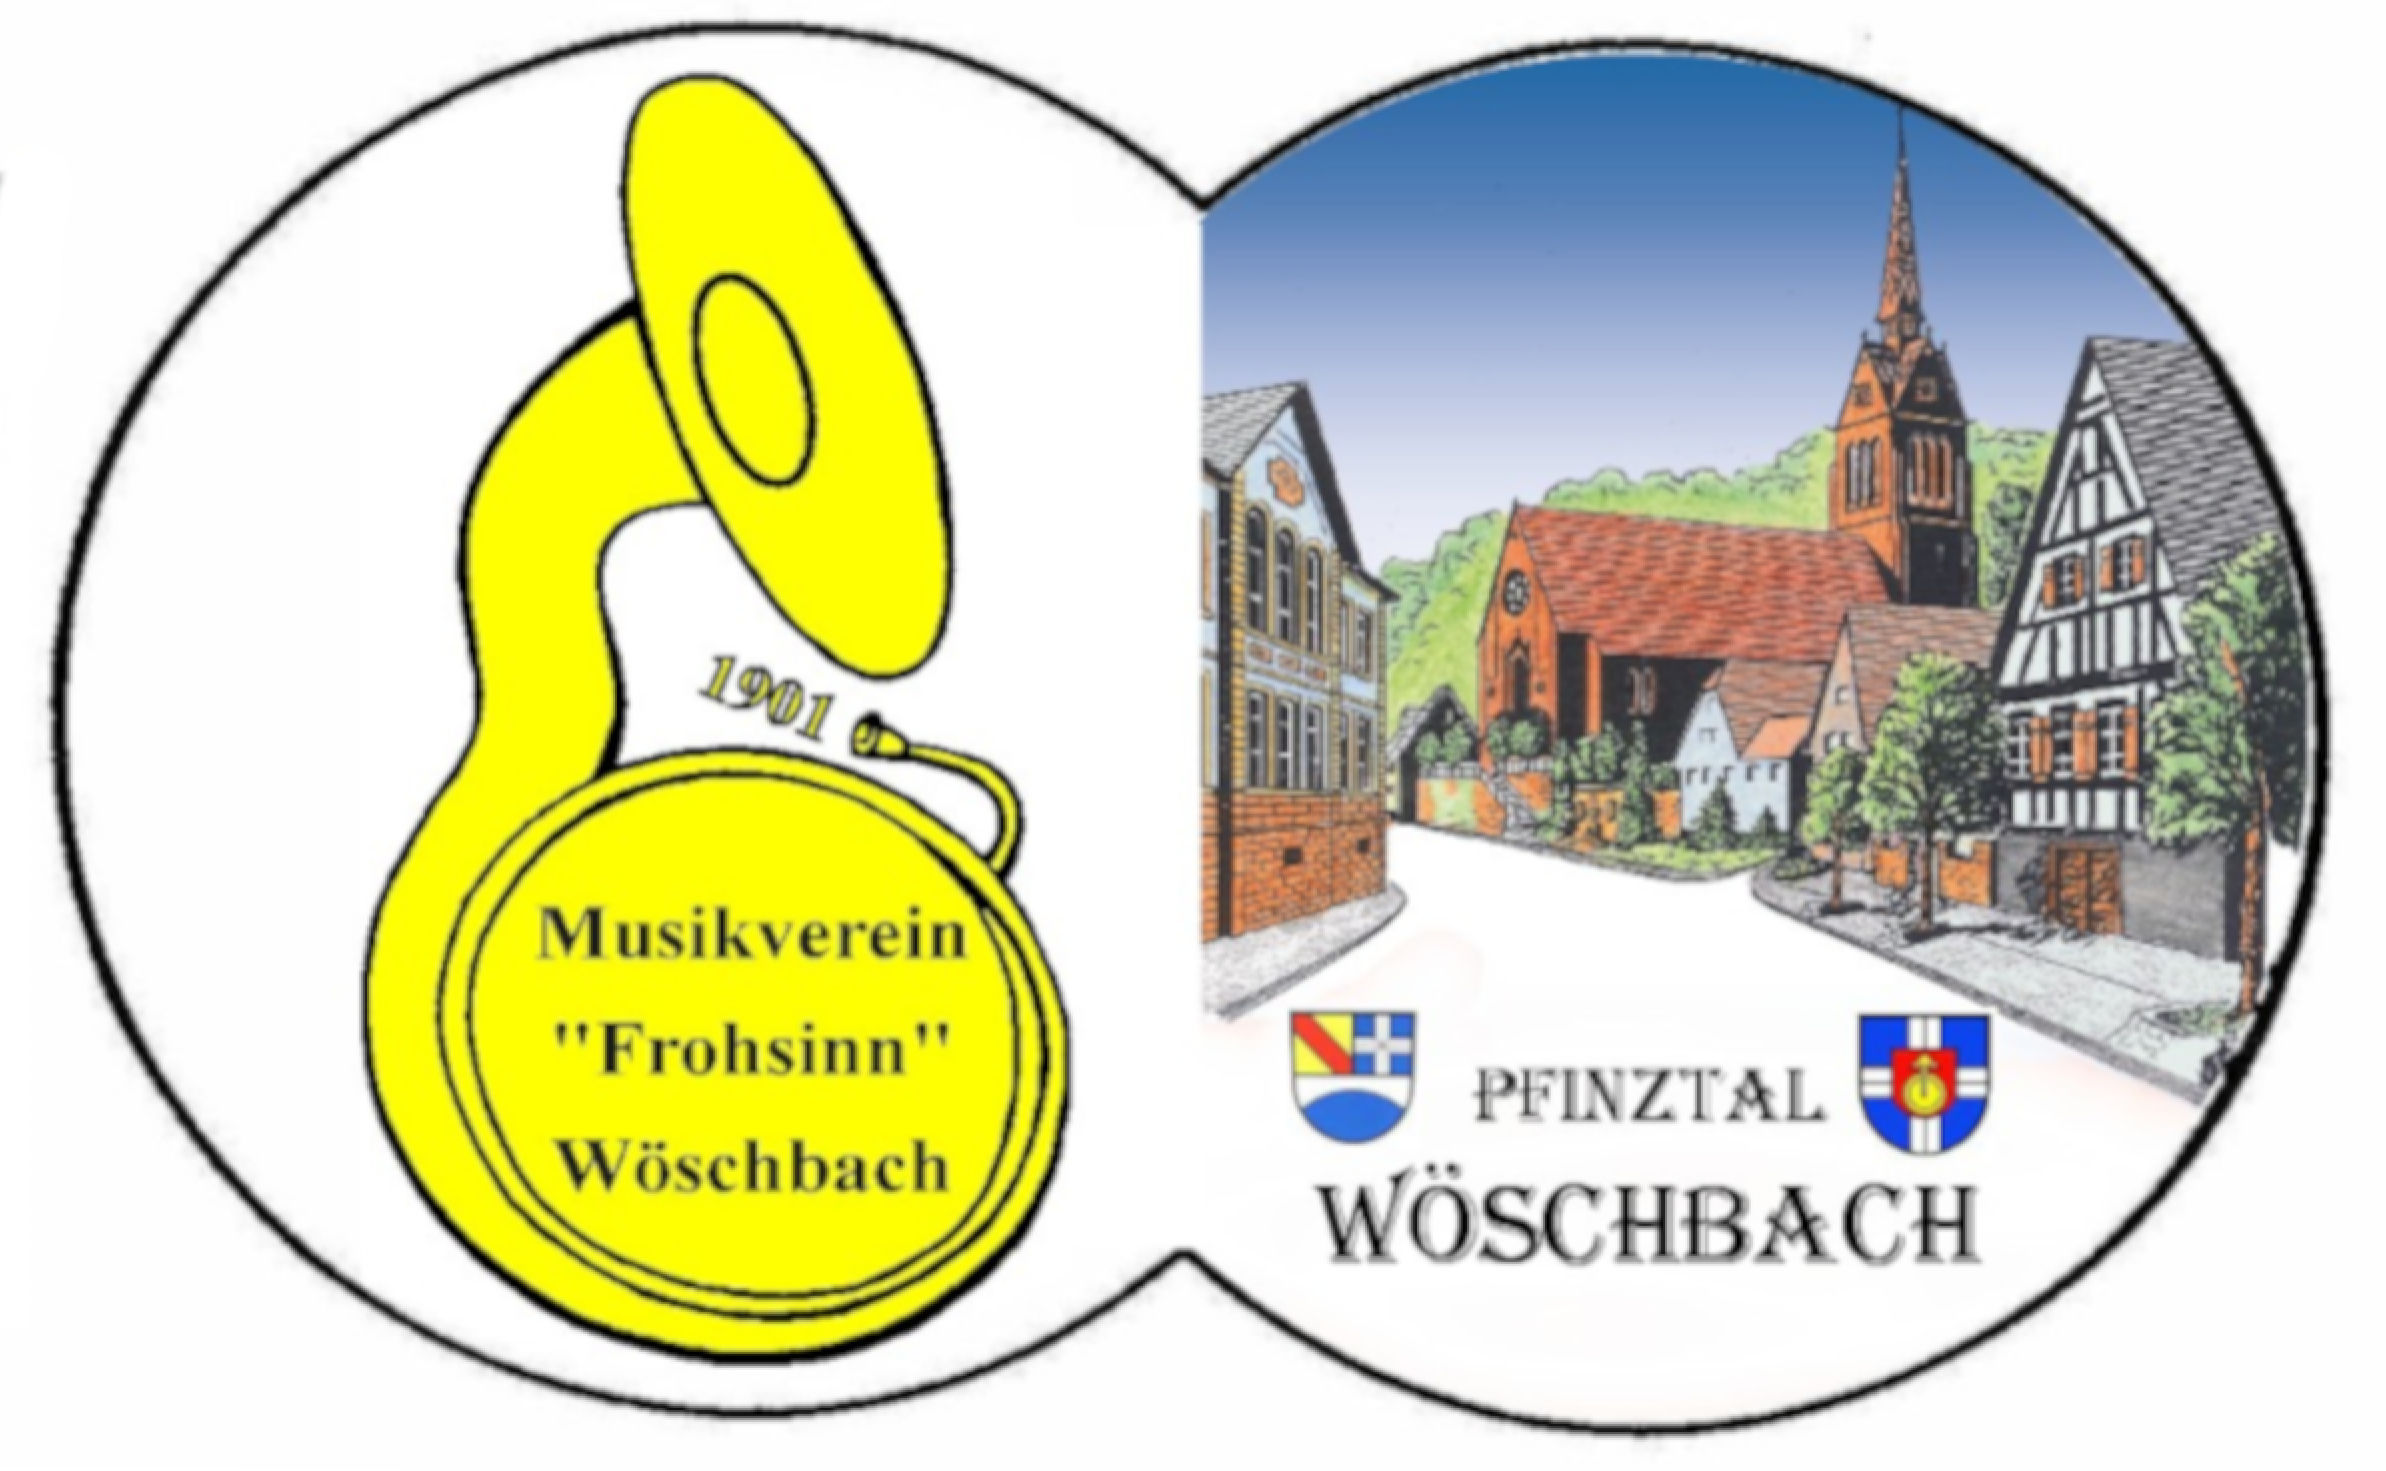 Musikverein Frohsinn Wöschbach 1901 e.V.